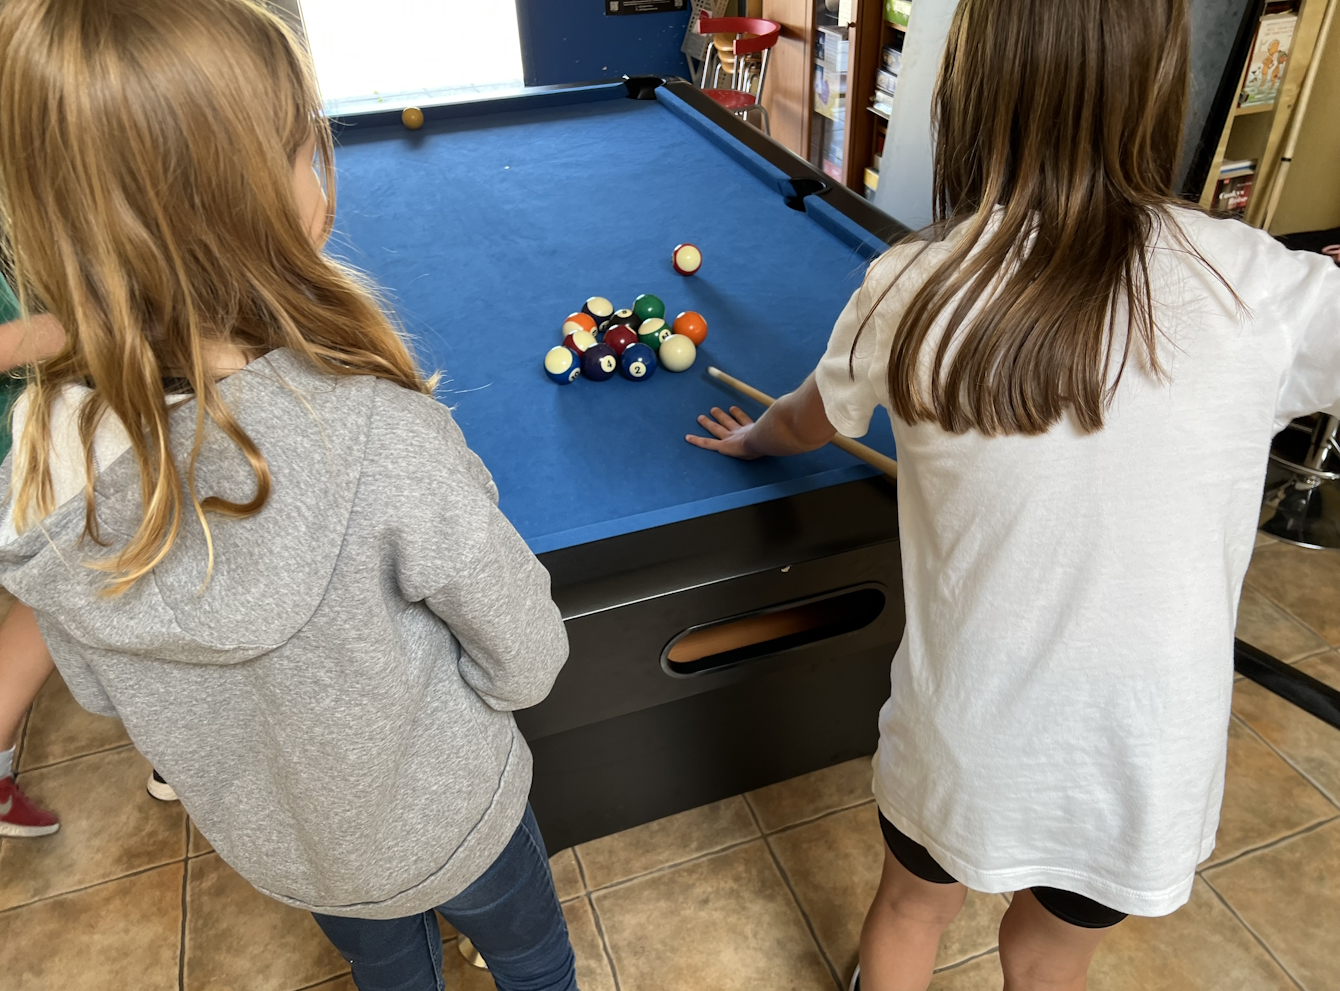 Zwei Mädchen spielen Pool-Billard.